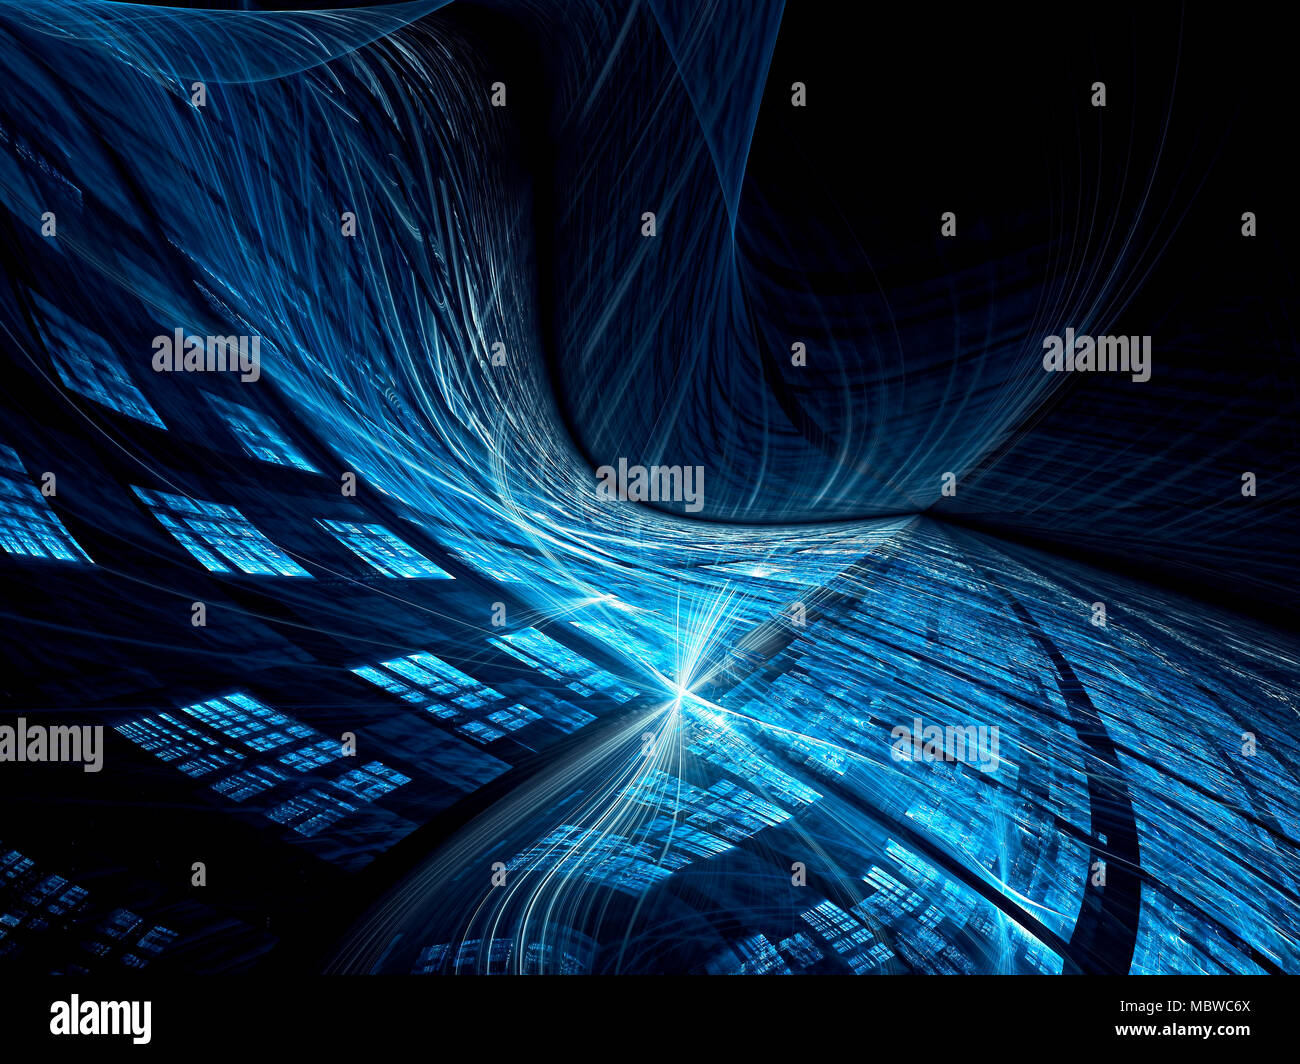 Wellenförmige Technologie Hintergrund - Abstrakt digital erzeugten Bild Stockfoto